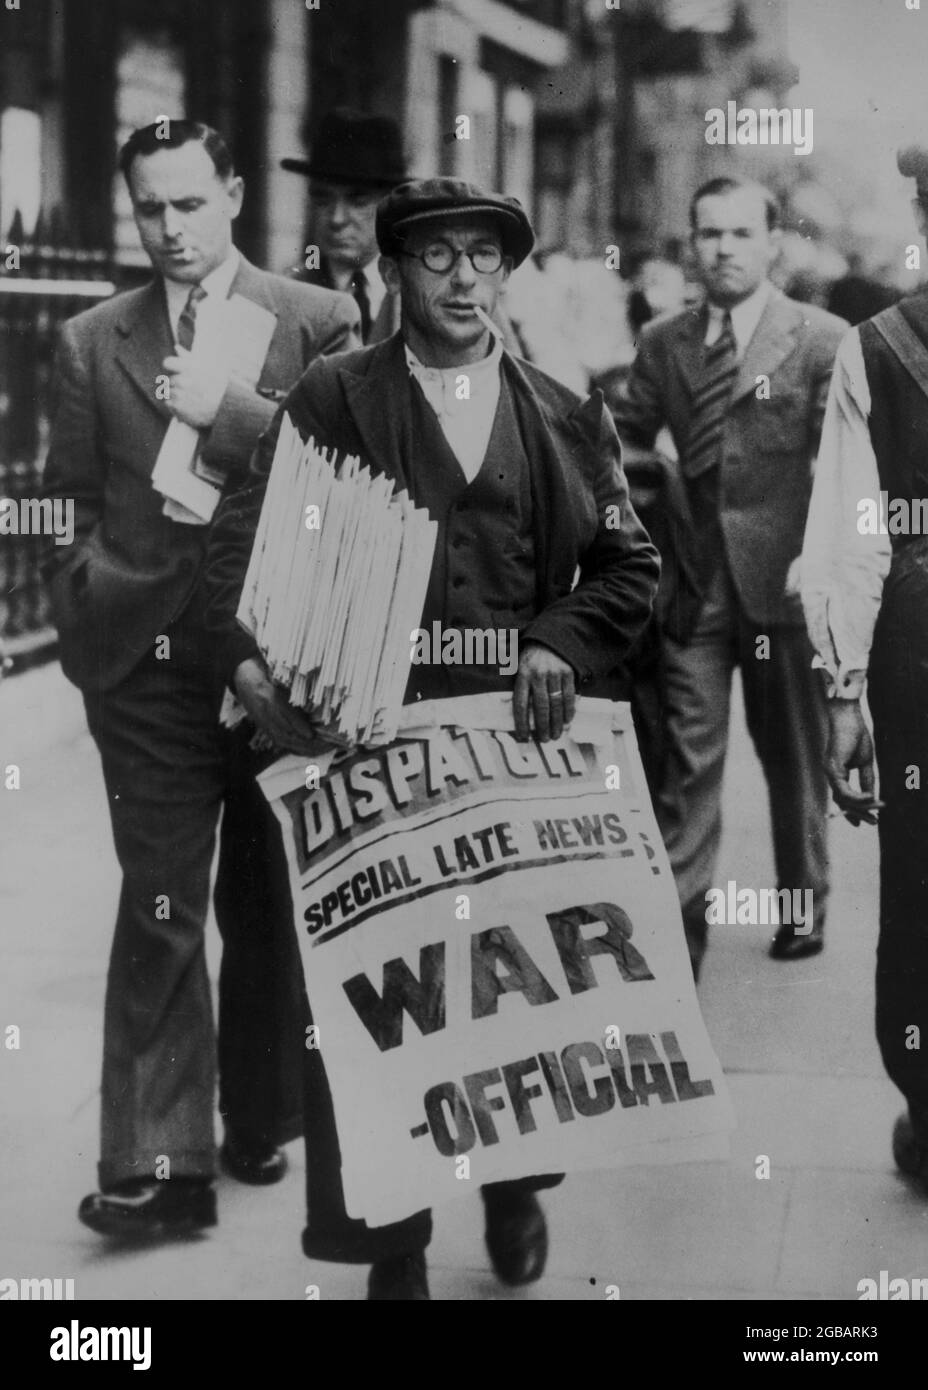 LONDRA, INGHILTERRA, Regno Unito - 3-4 settembre 1939 - UN venditore di giornali che tiene una pila di giornali e firma che dichiara 'speciali notizie tardive: Guerra - ufficiale,' in Whi Foto Stock